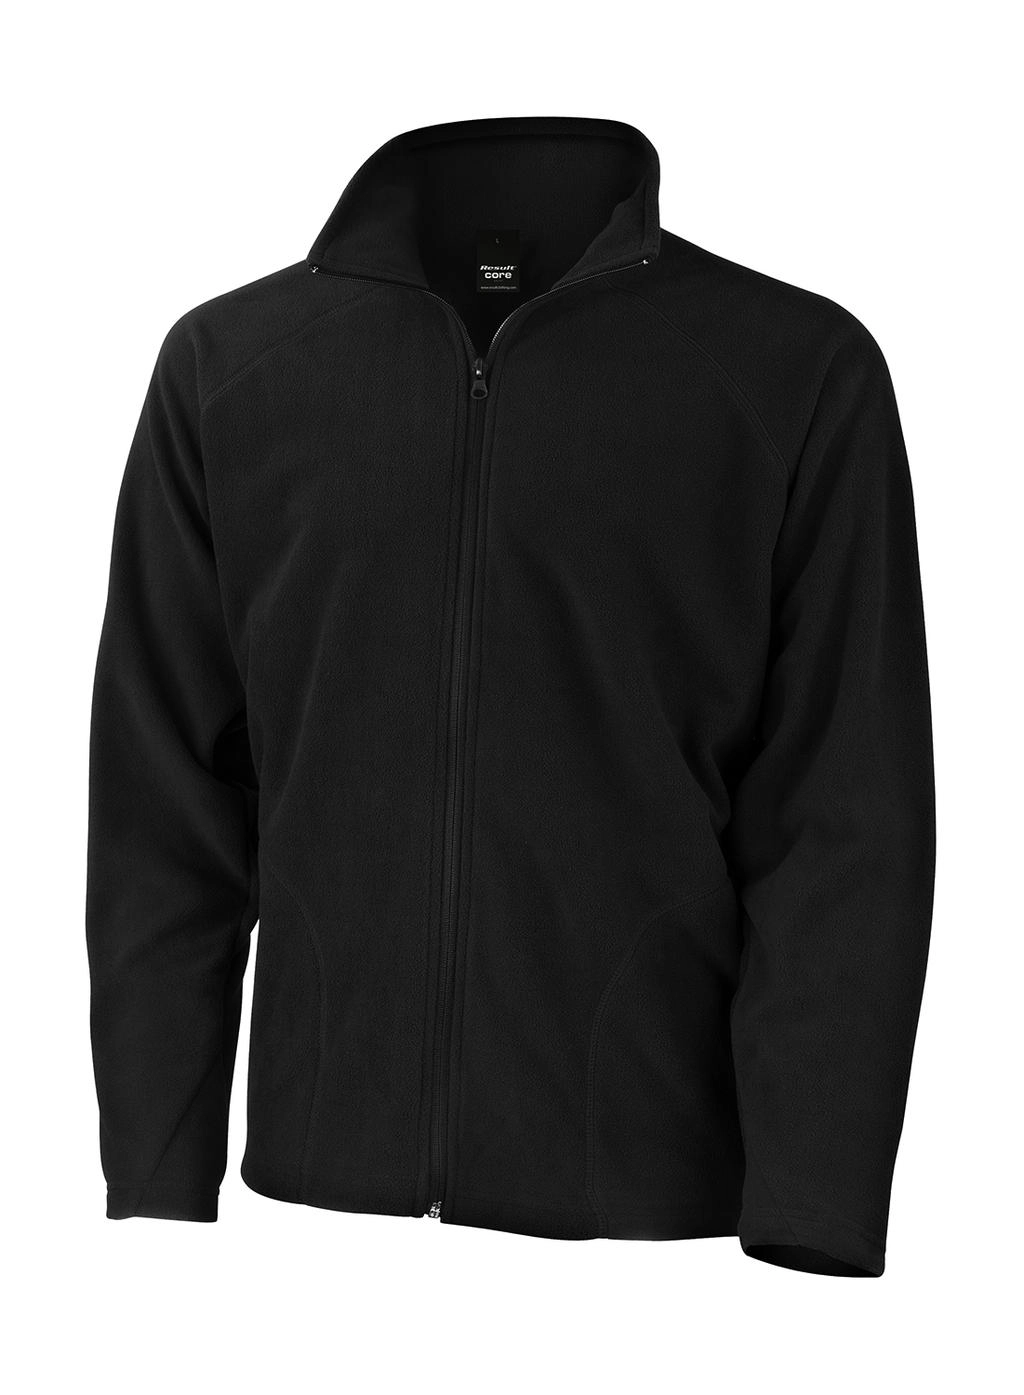 Microfleece Jacket zum Besticken und Bedrucken in der Farbe Black mit Ihren Logo, Schriftzug oder Motiv.